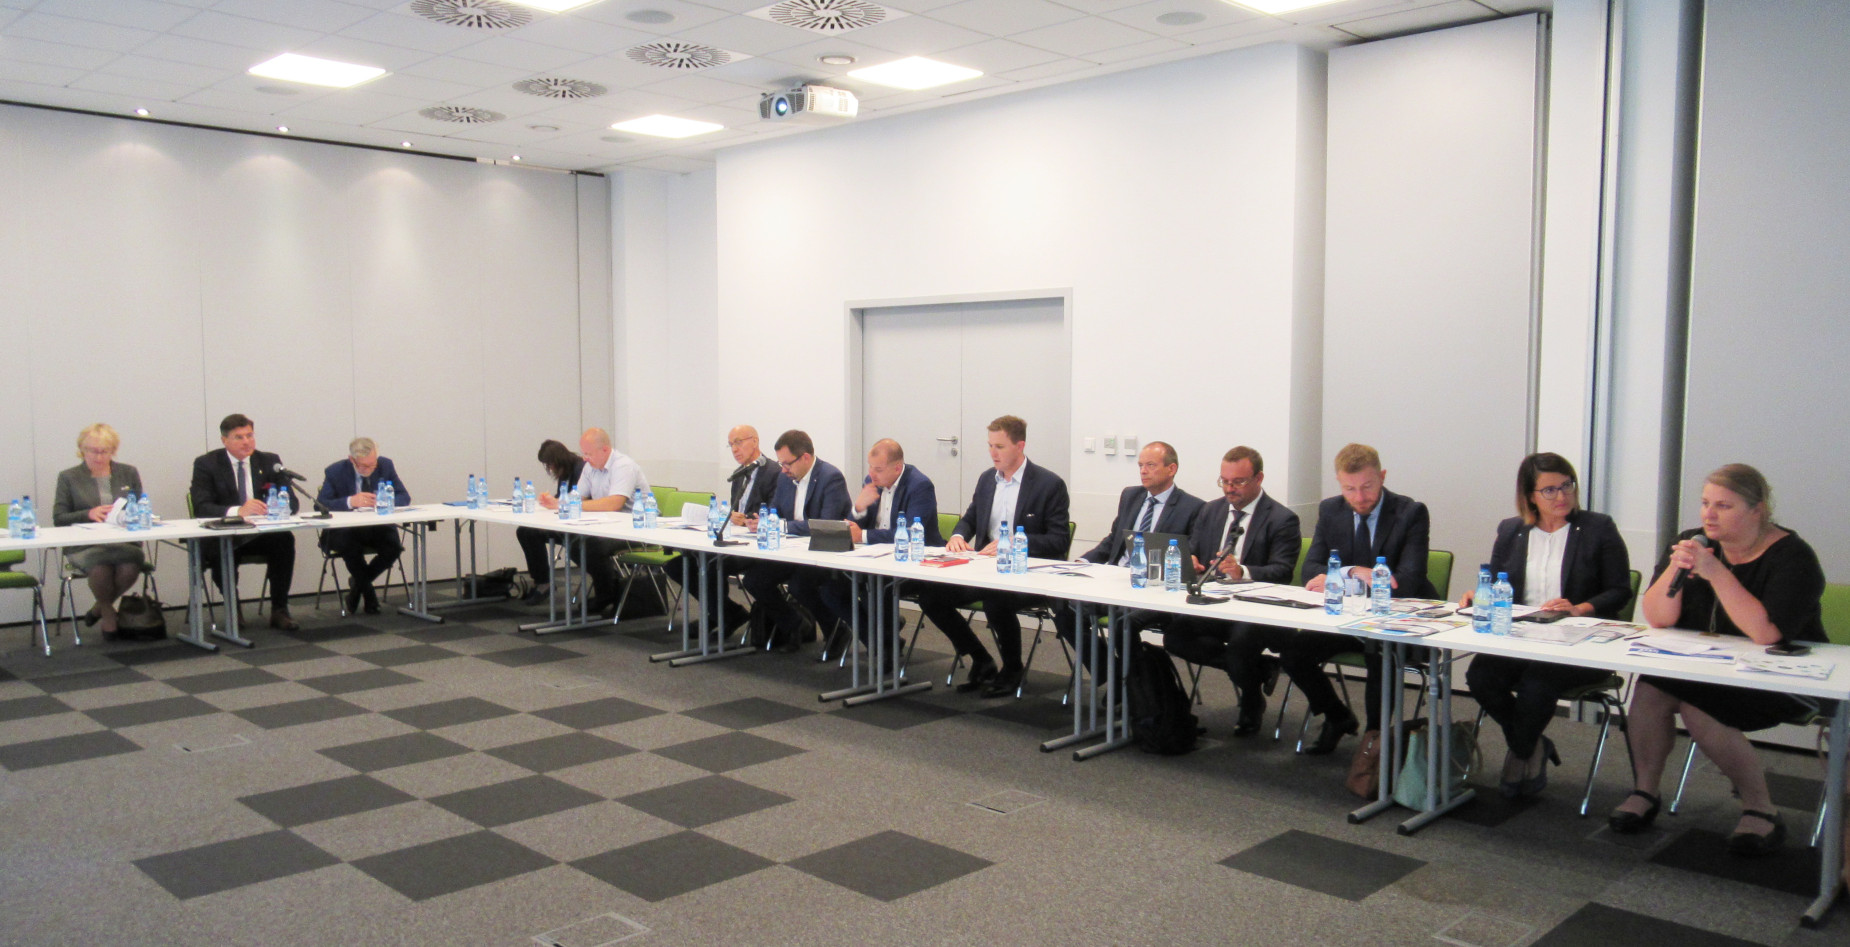 Sejmowa komisja cyfryzacji chwali Pomorze za nowoczesne technologie i innowacyjność